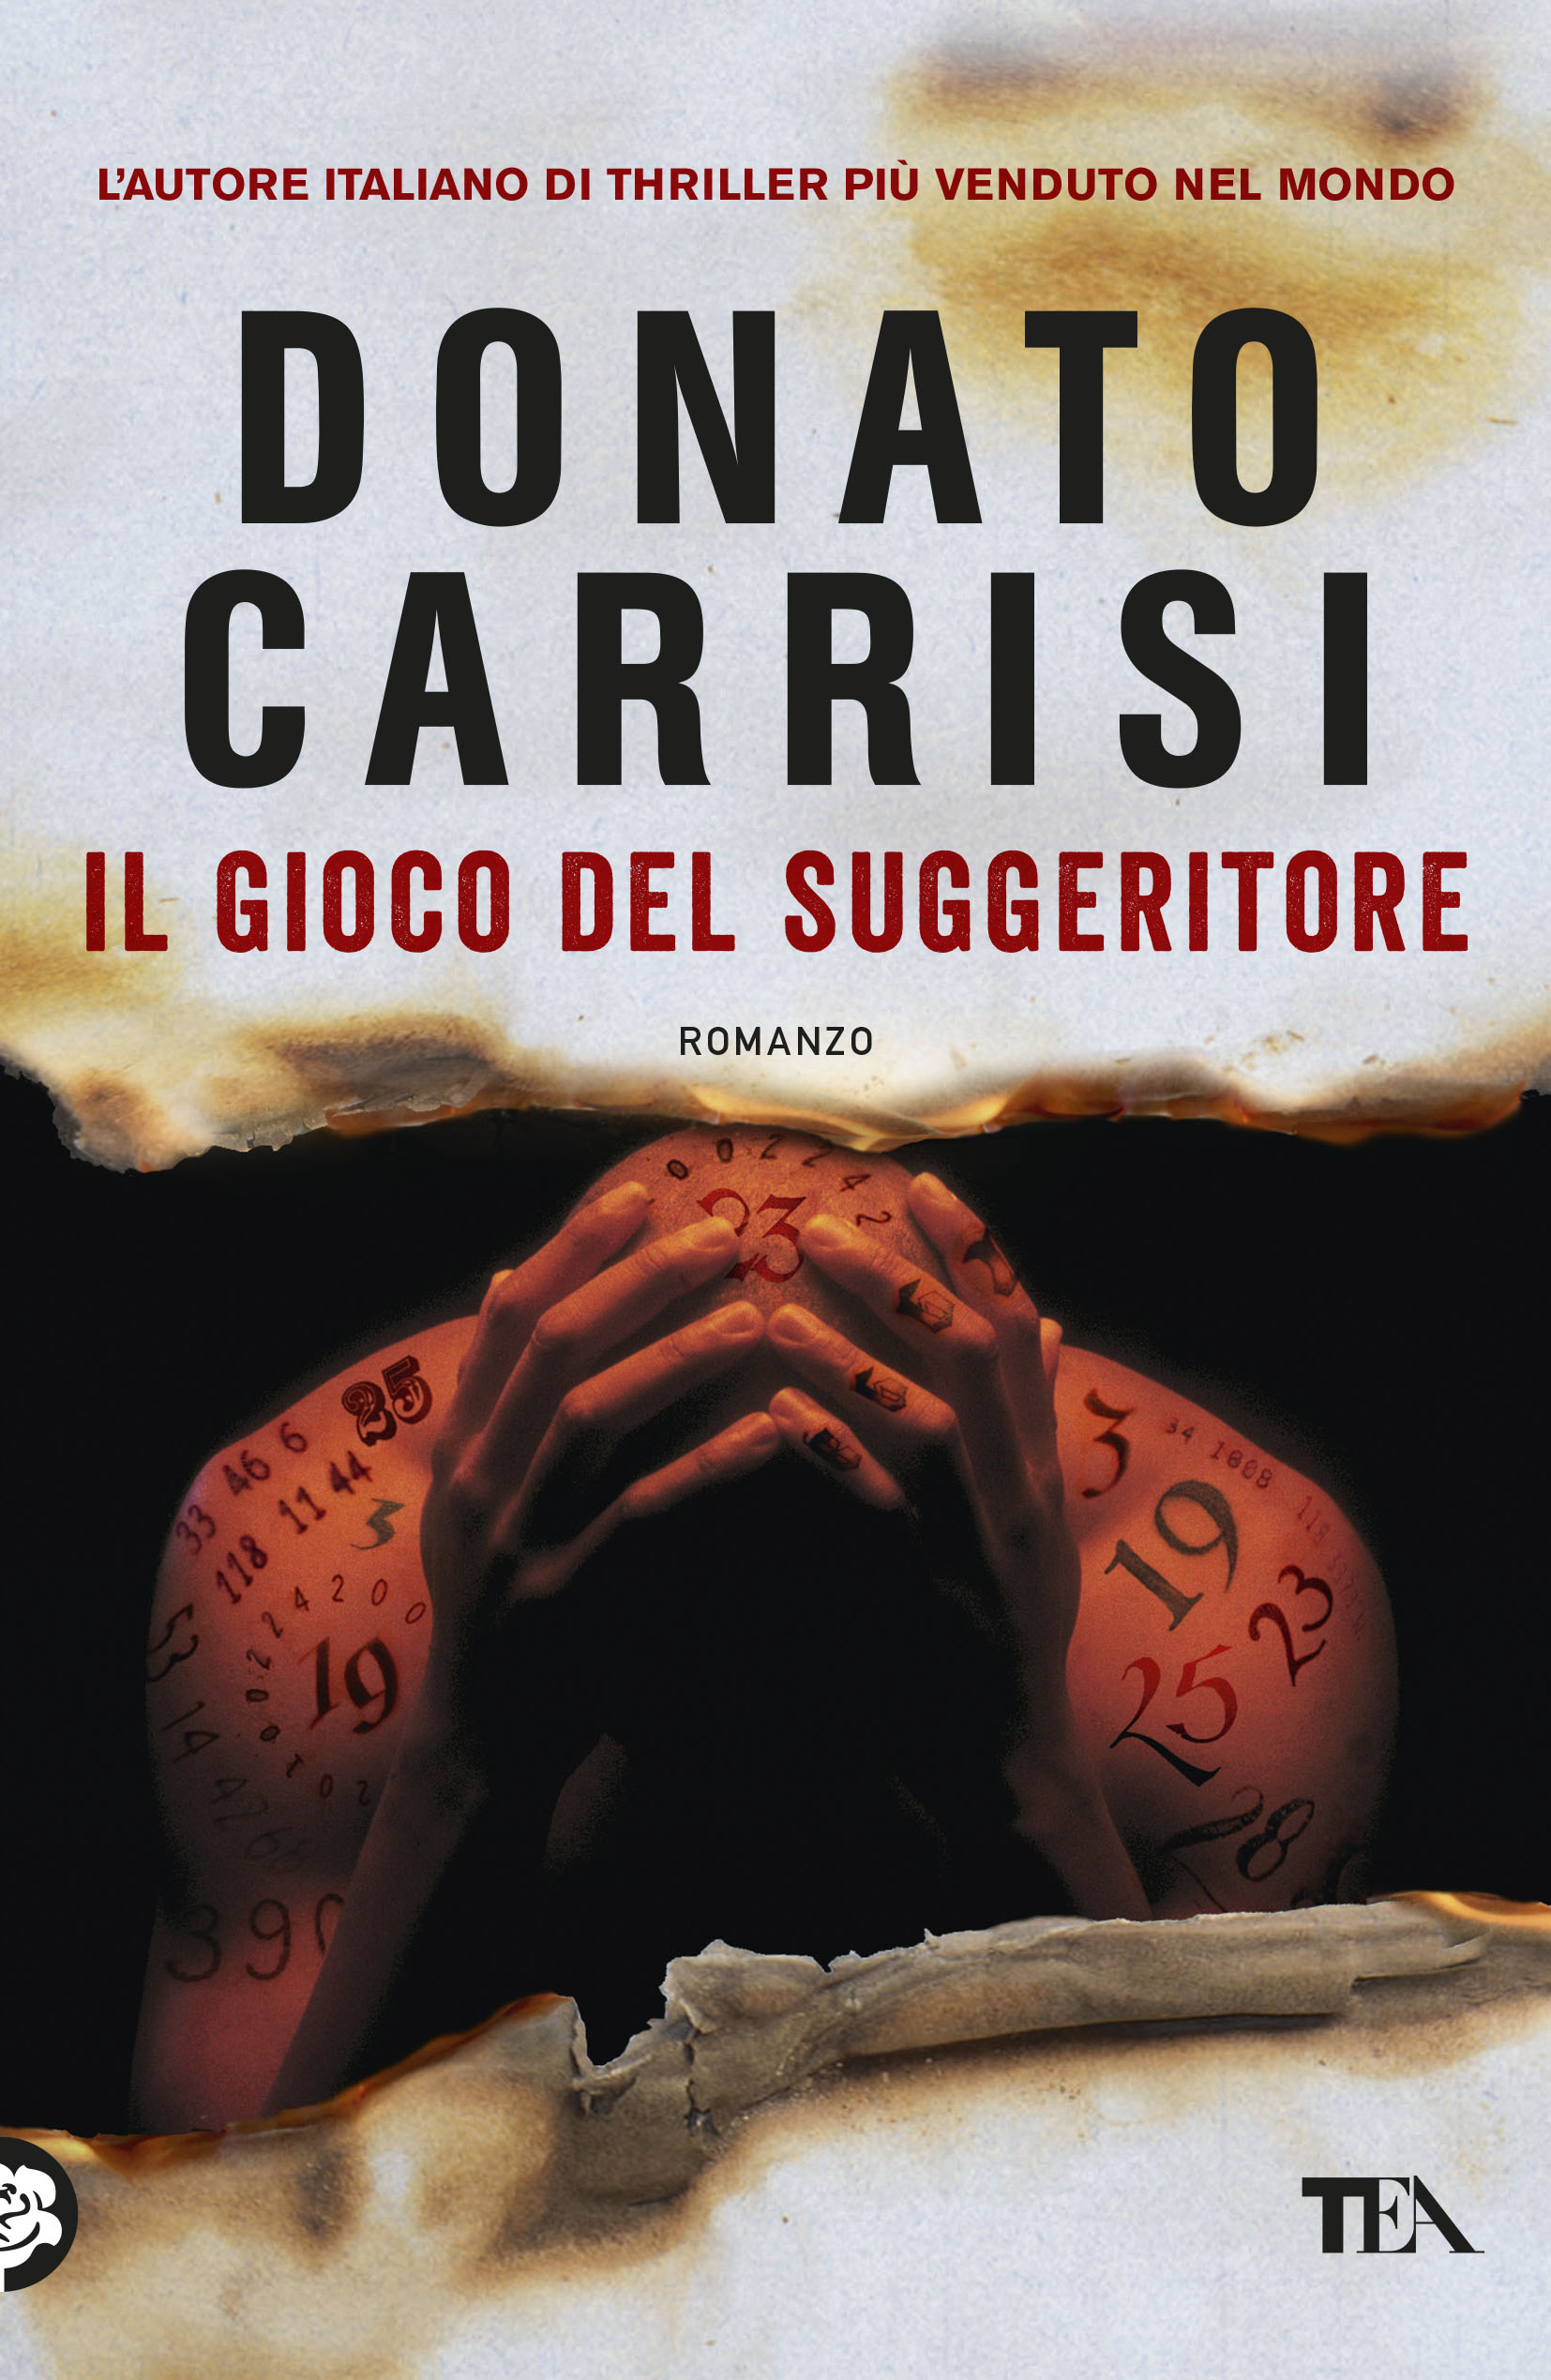 Donato Carrisi - Il gioco del suggeritore — TEA Libri